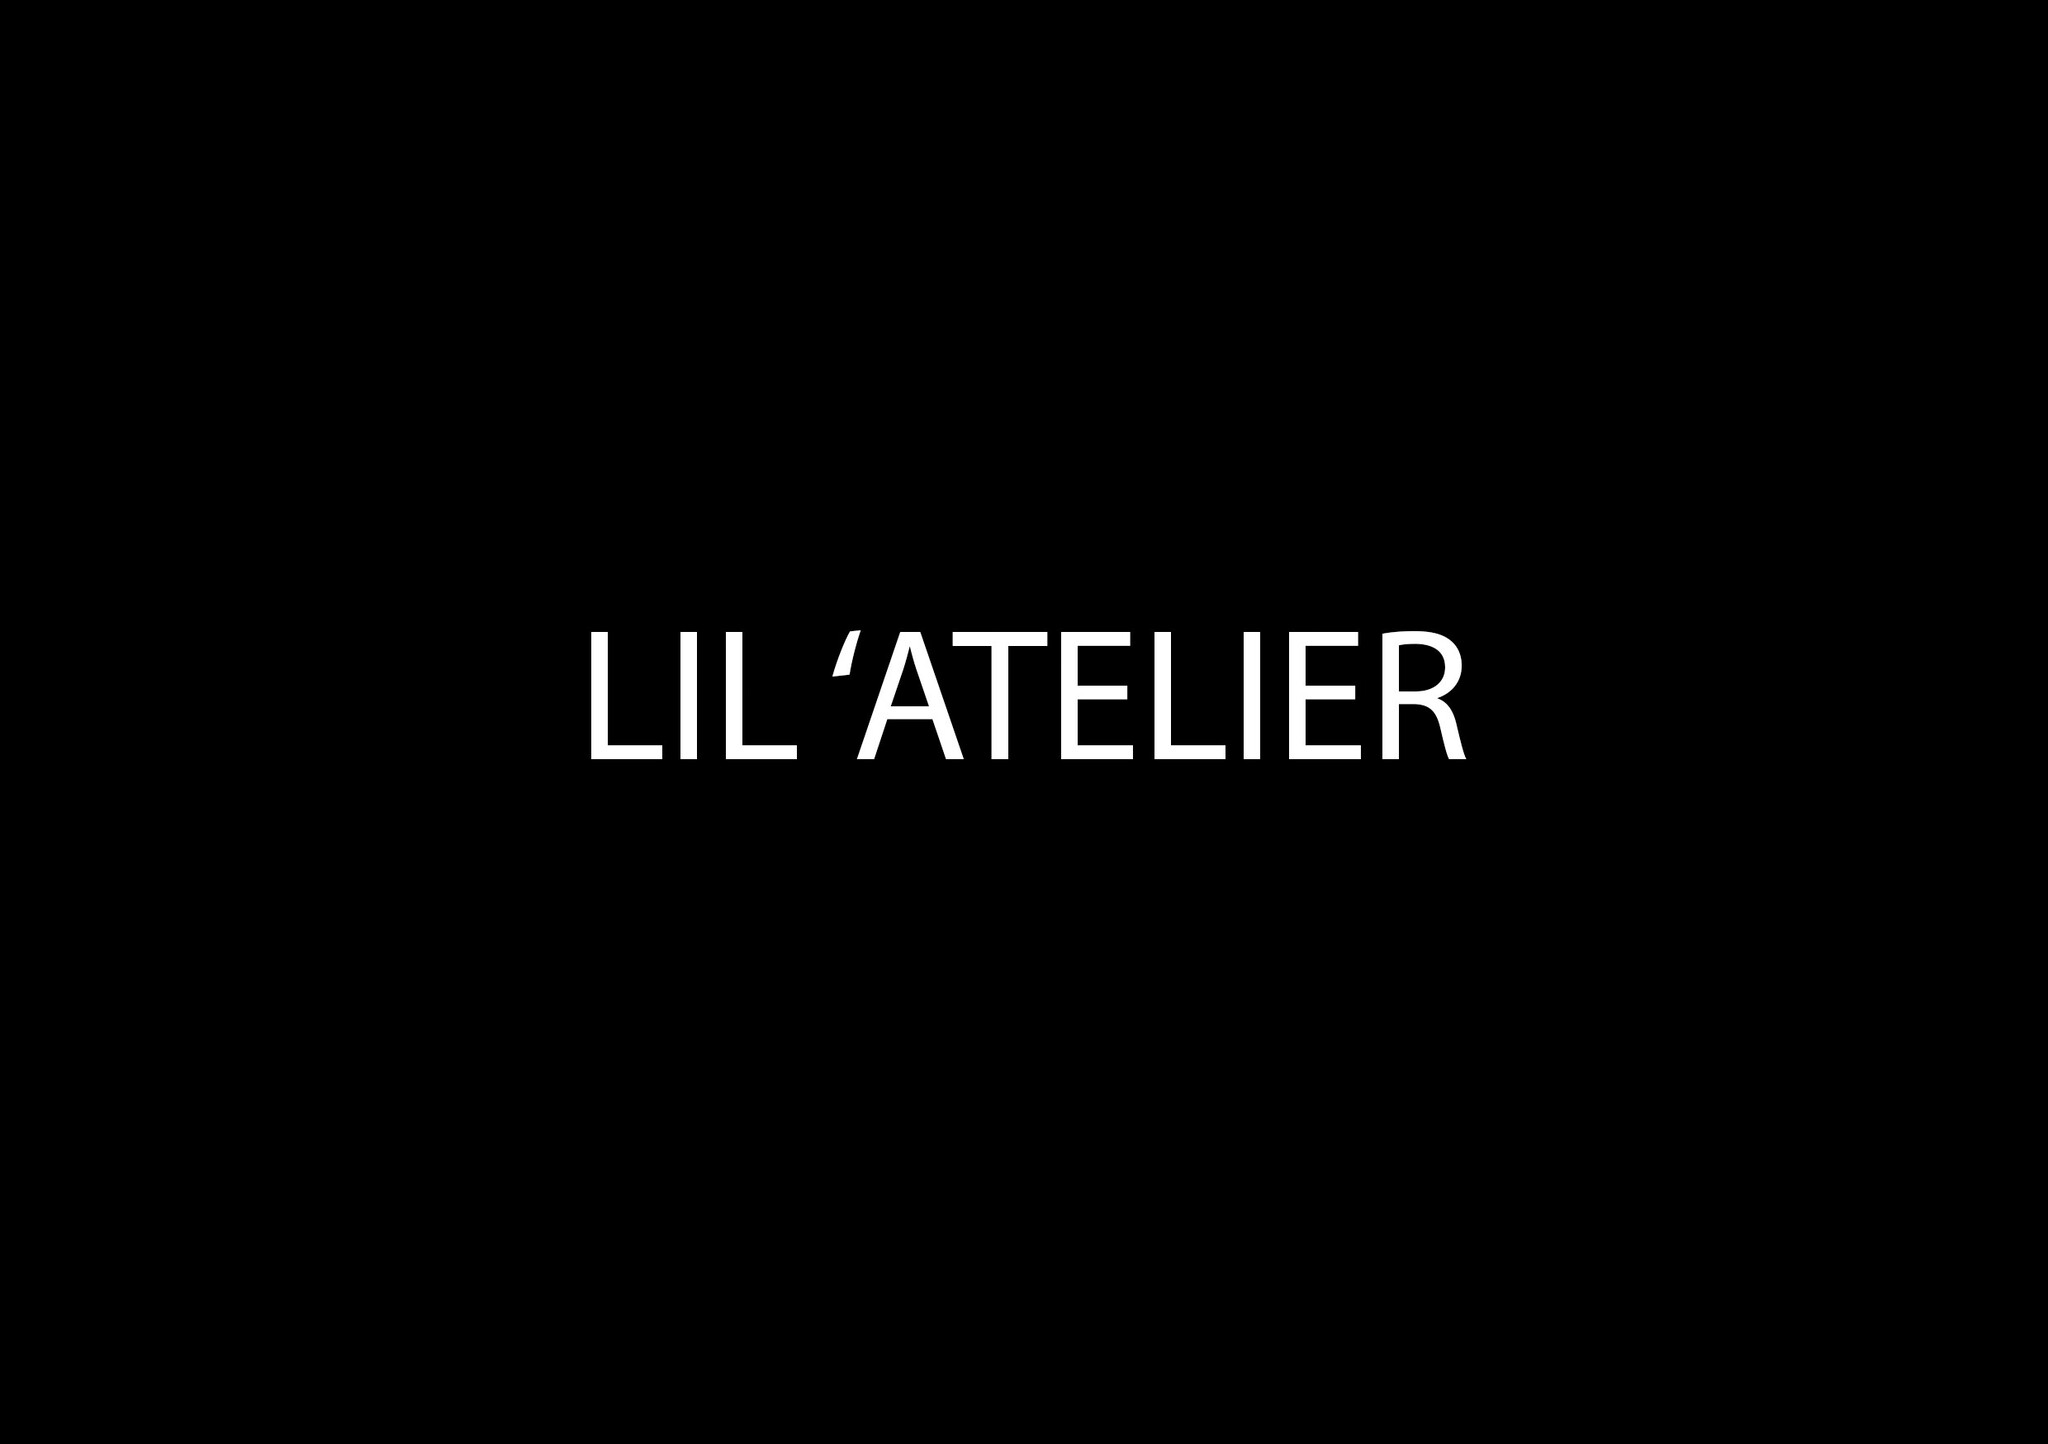 Lil 'Atelier